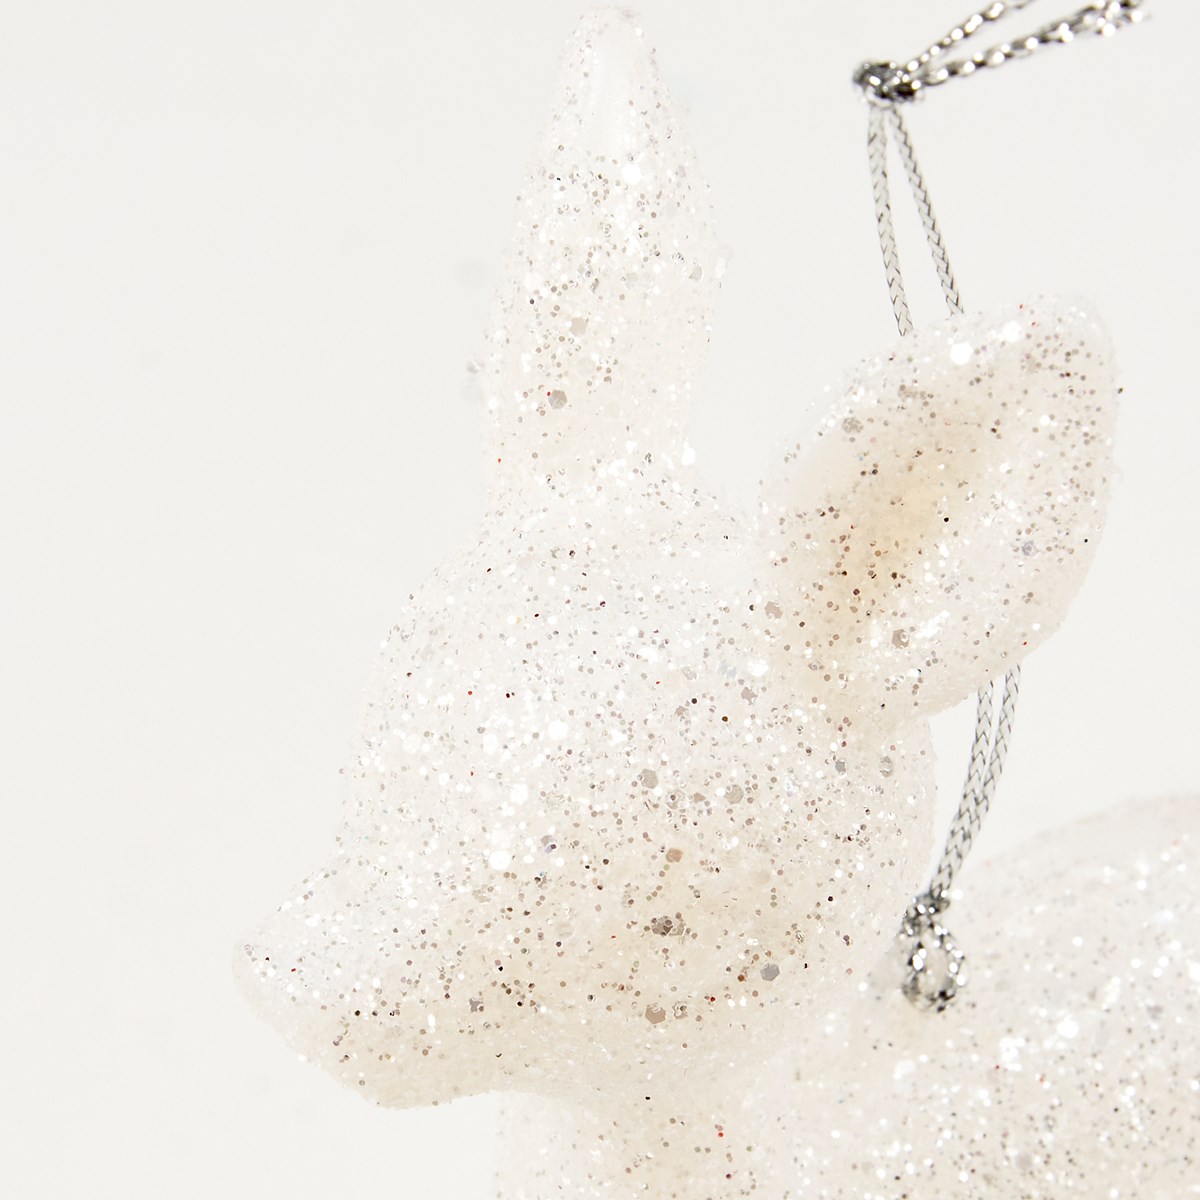 White Deer Ornament Set - Plastic, Glitter